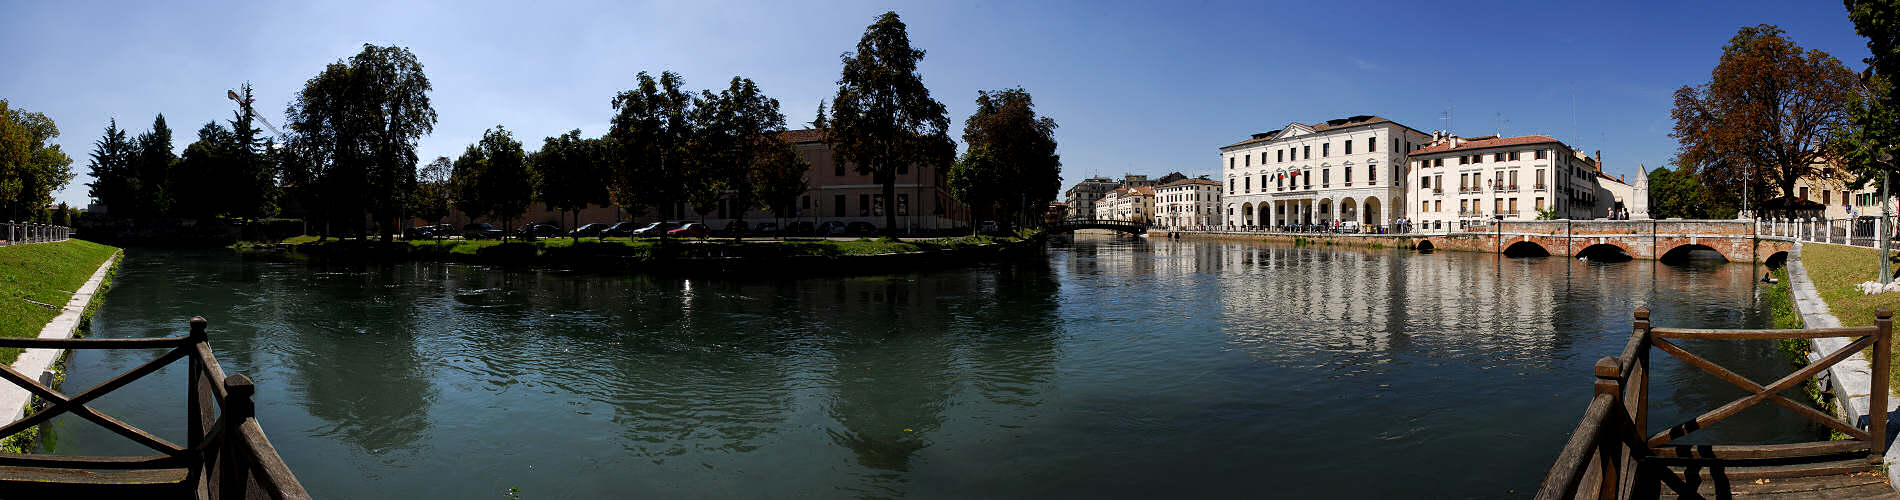 Treviso - fiume Sile e Cagnan